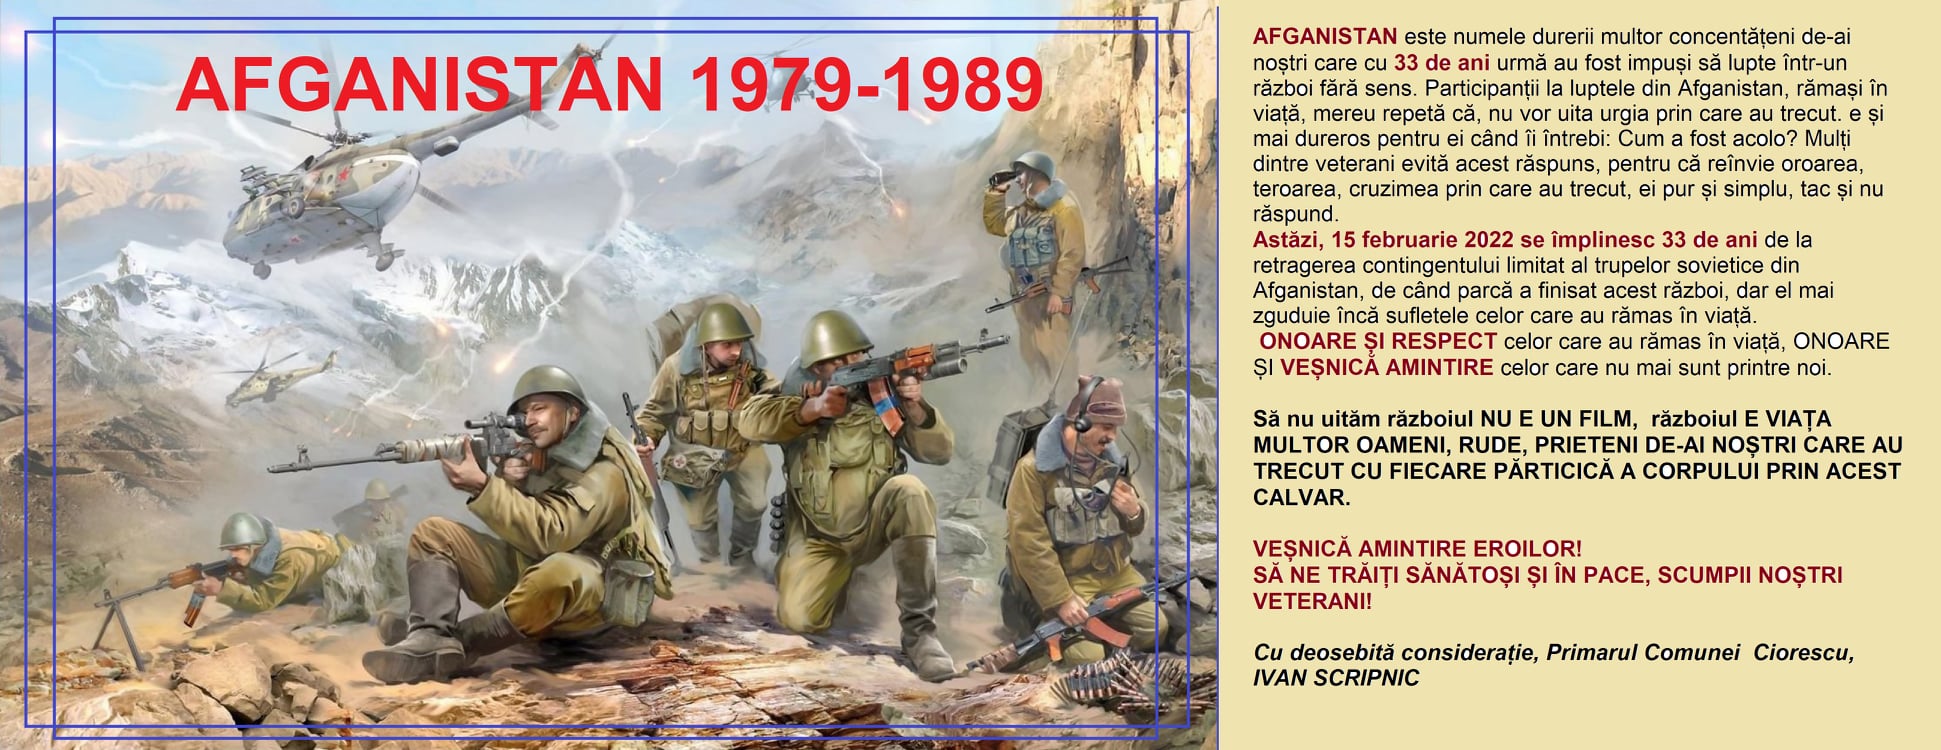 Avganistan 1979-1989